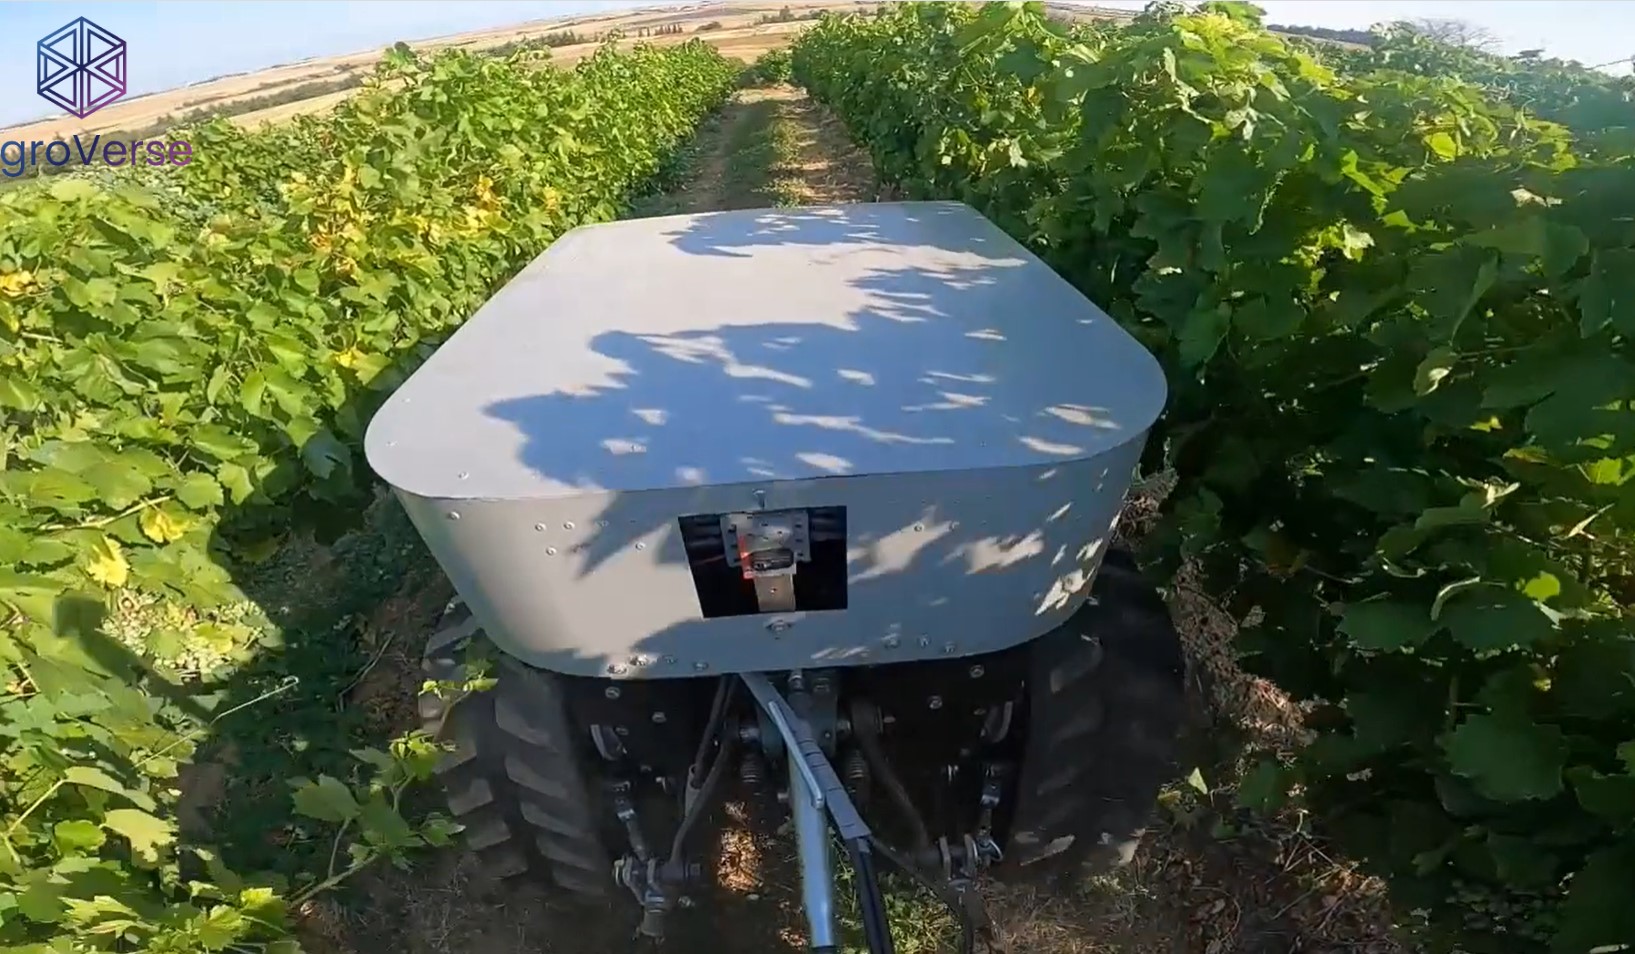 Ρομπότ που πηγαίνει μόνο του στο χωράφι για αγροτικές εργασίες - Η ανακάλυψη Ελλήνων μηχανικών